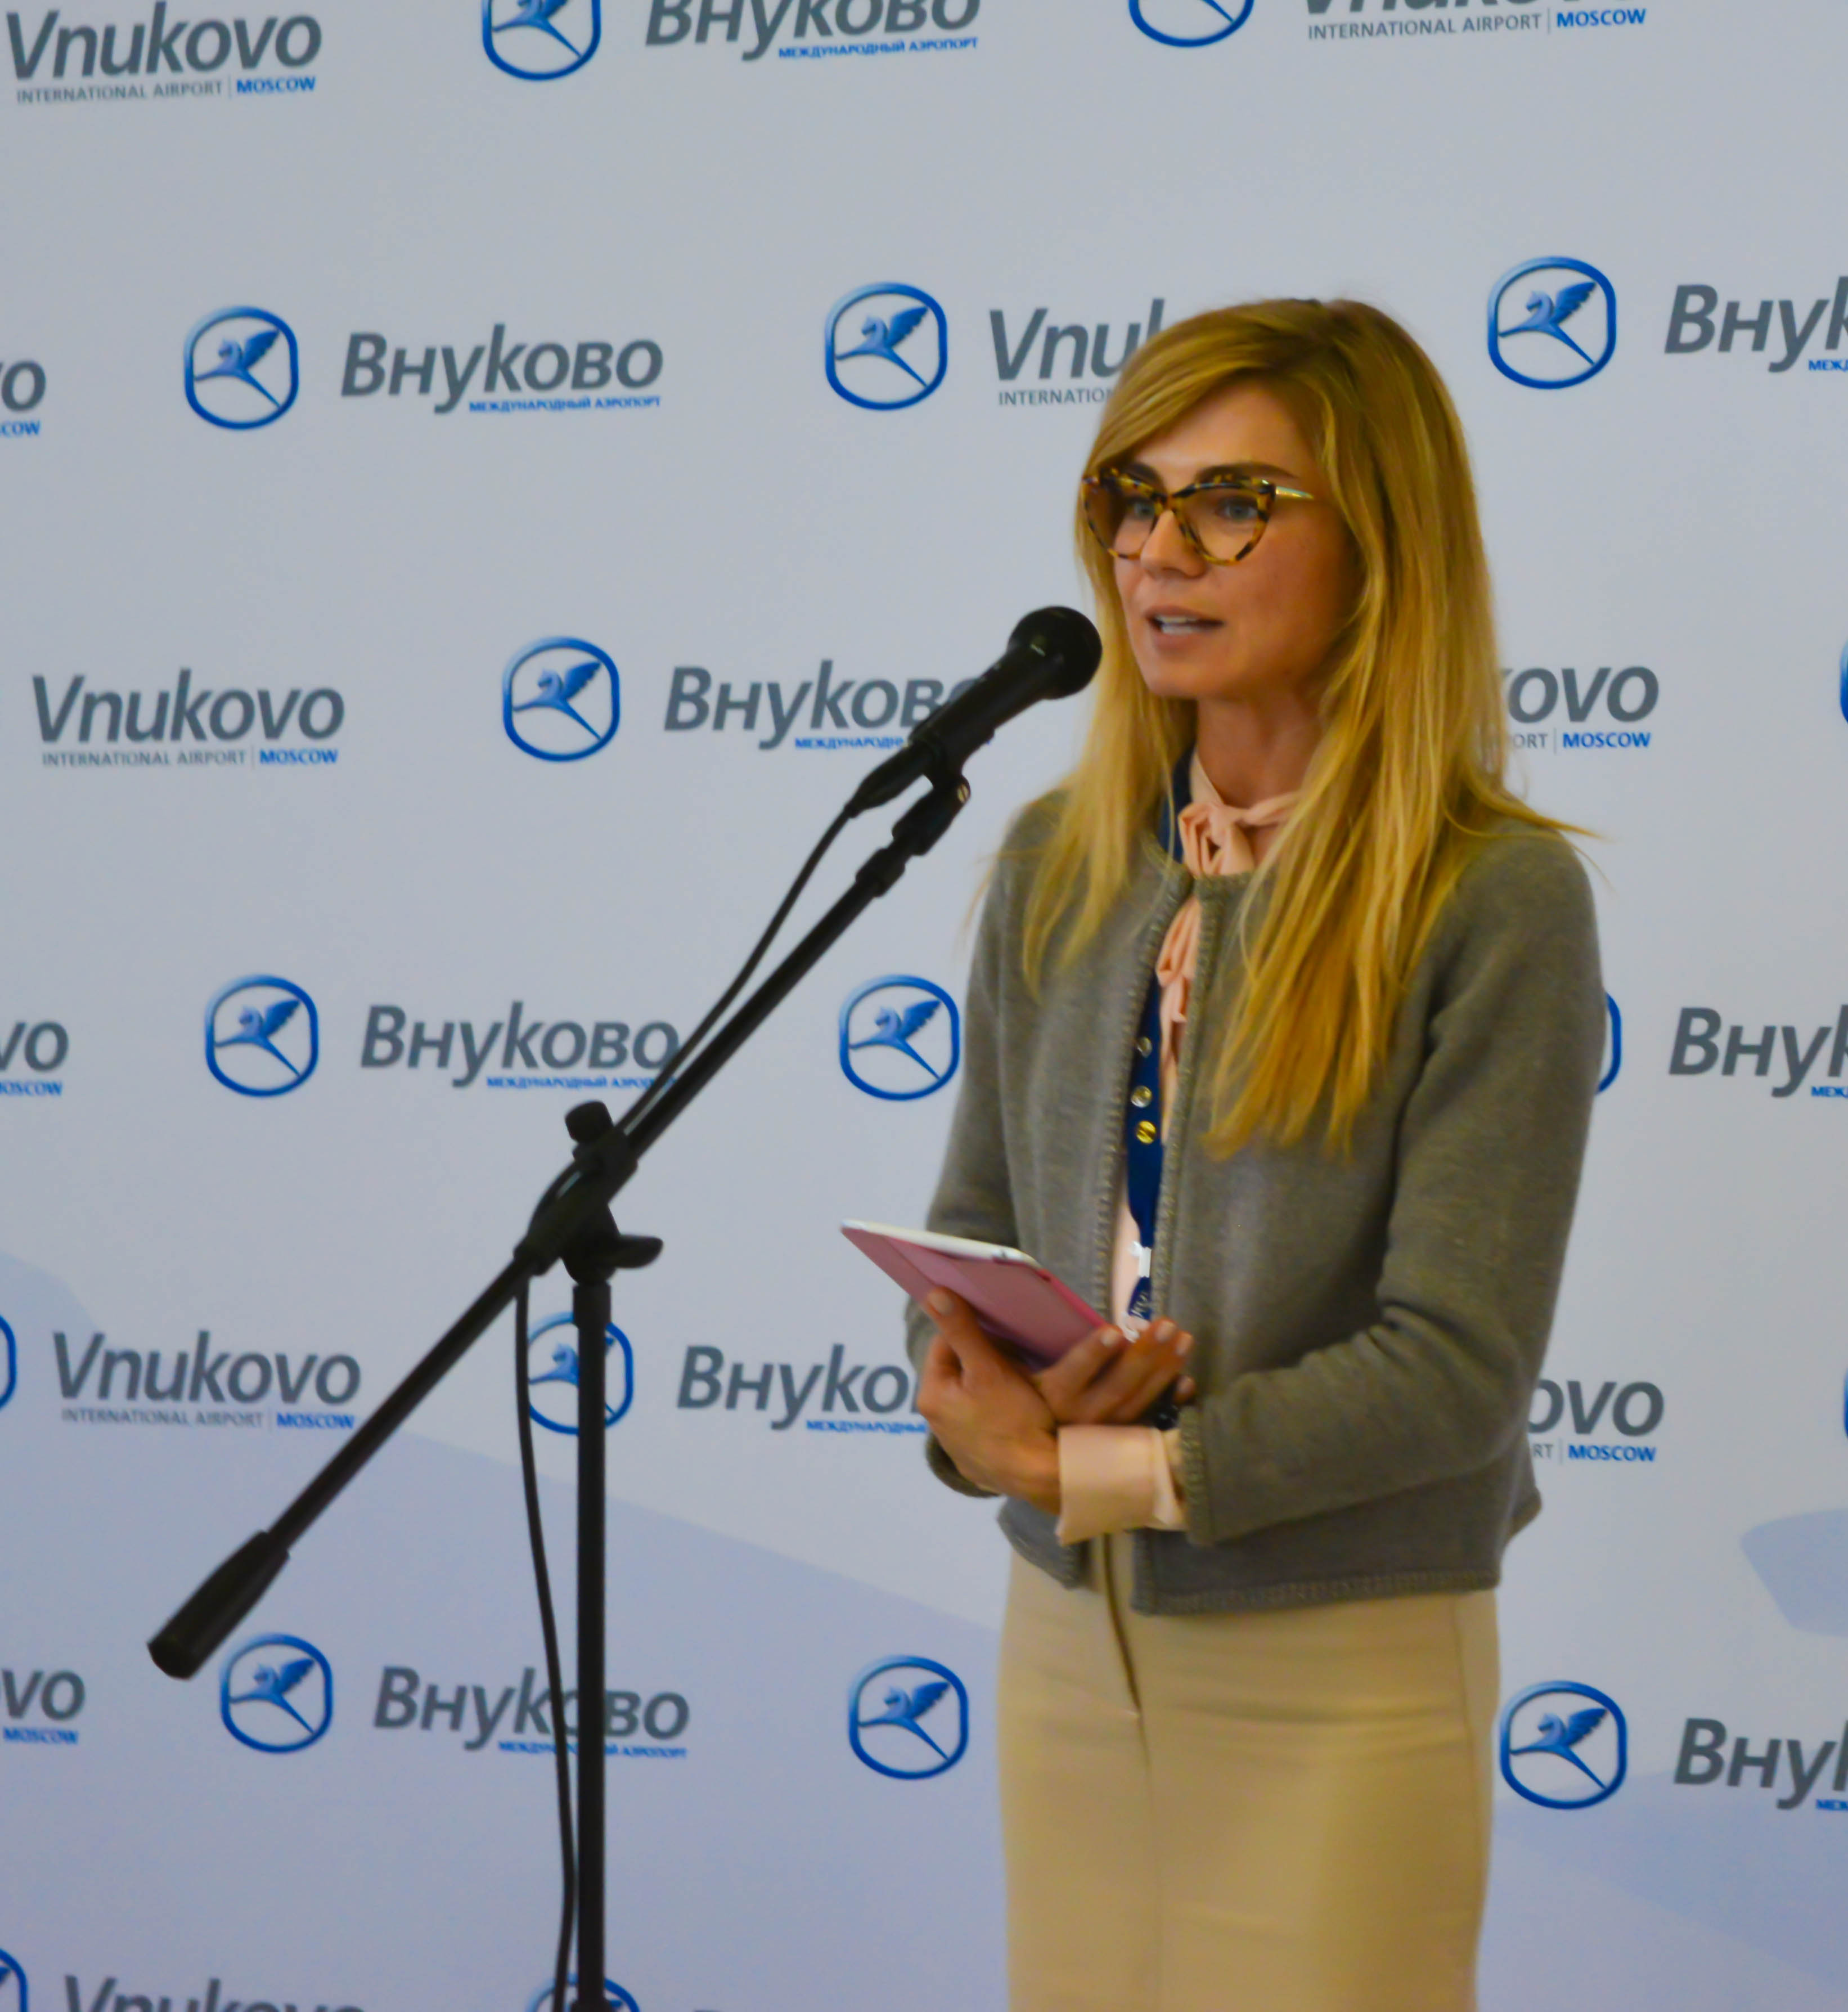 Аэропорт Внуково приветствует нового партнера – авиакомпанию FlyOne! | Международный аэропорт Внуково